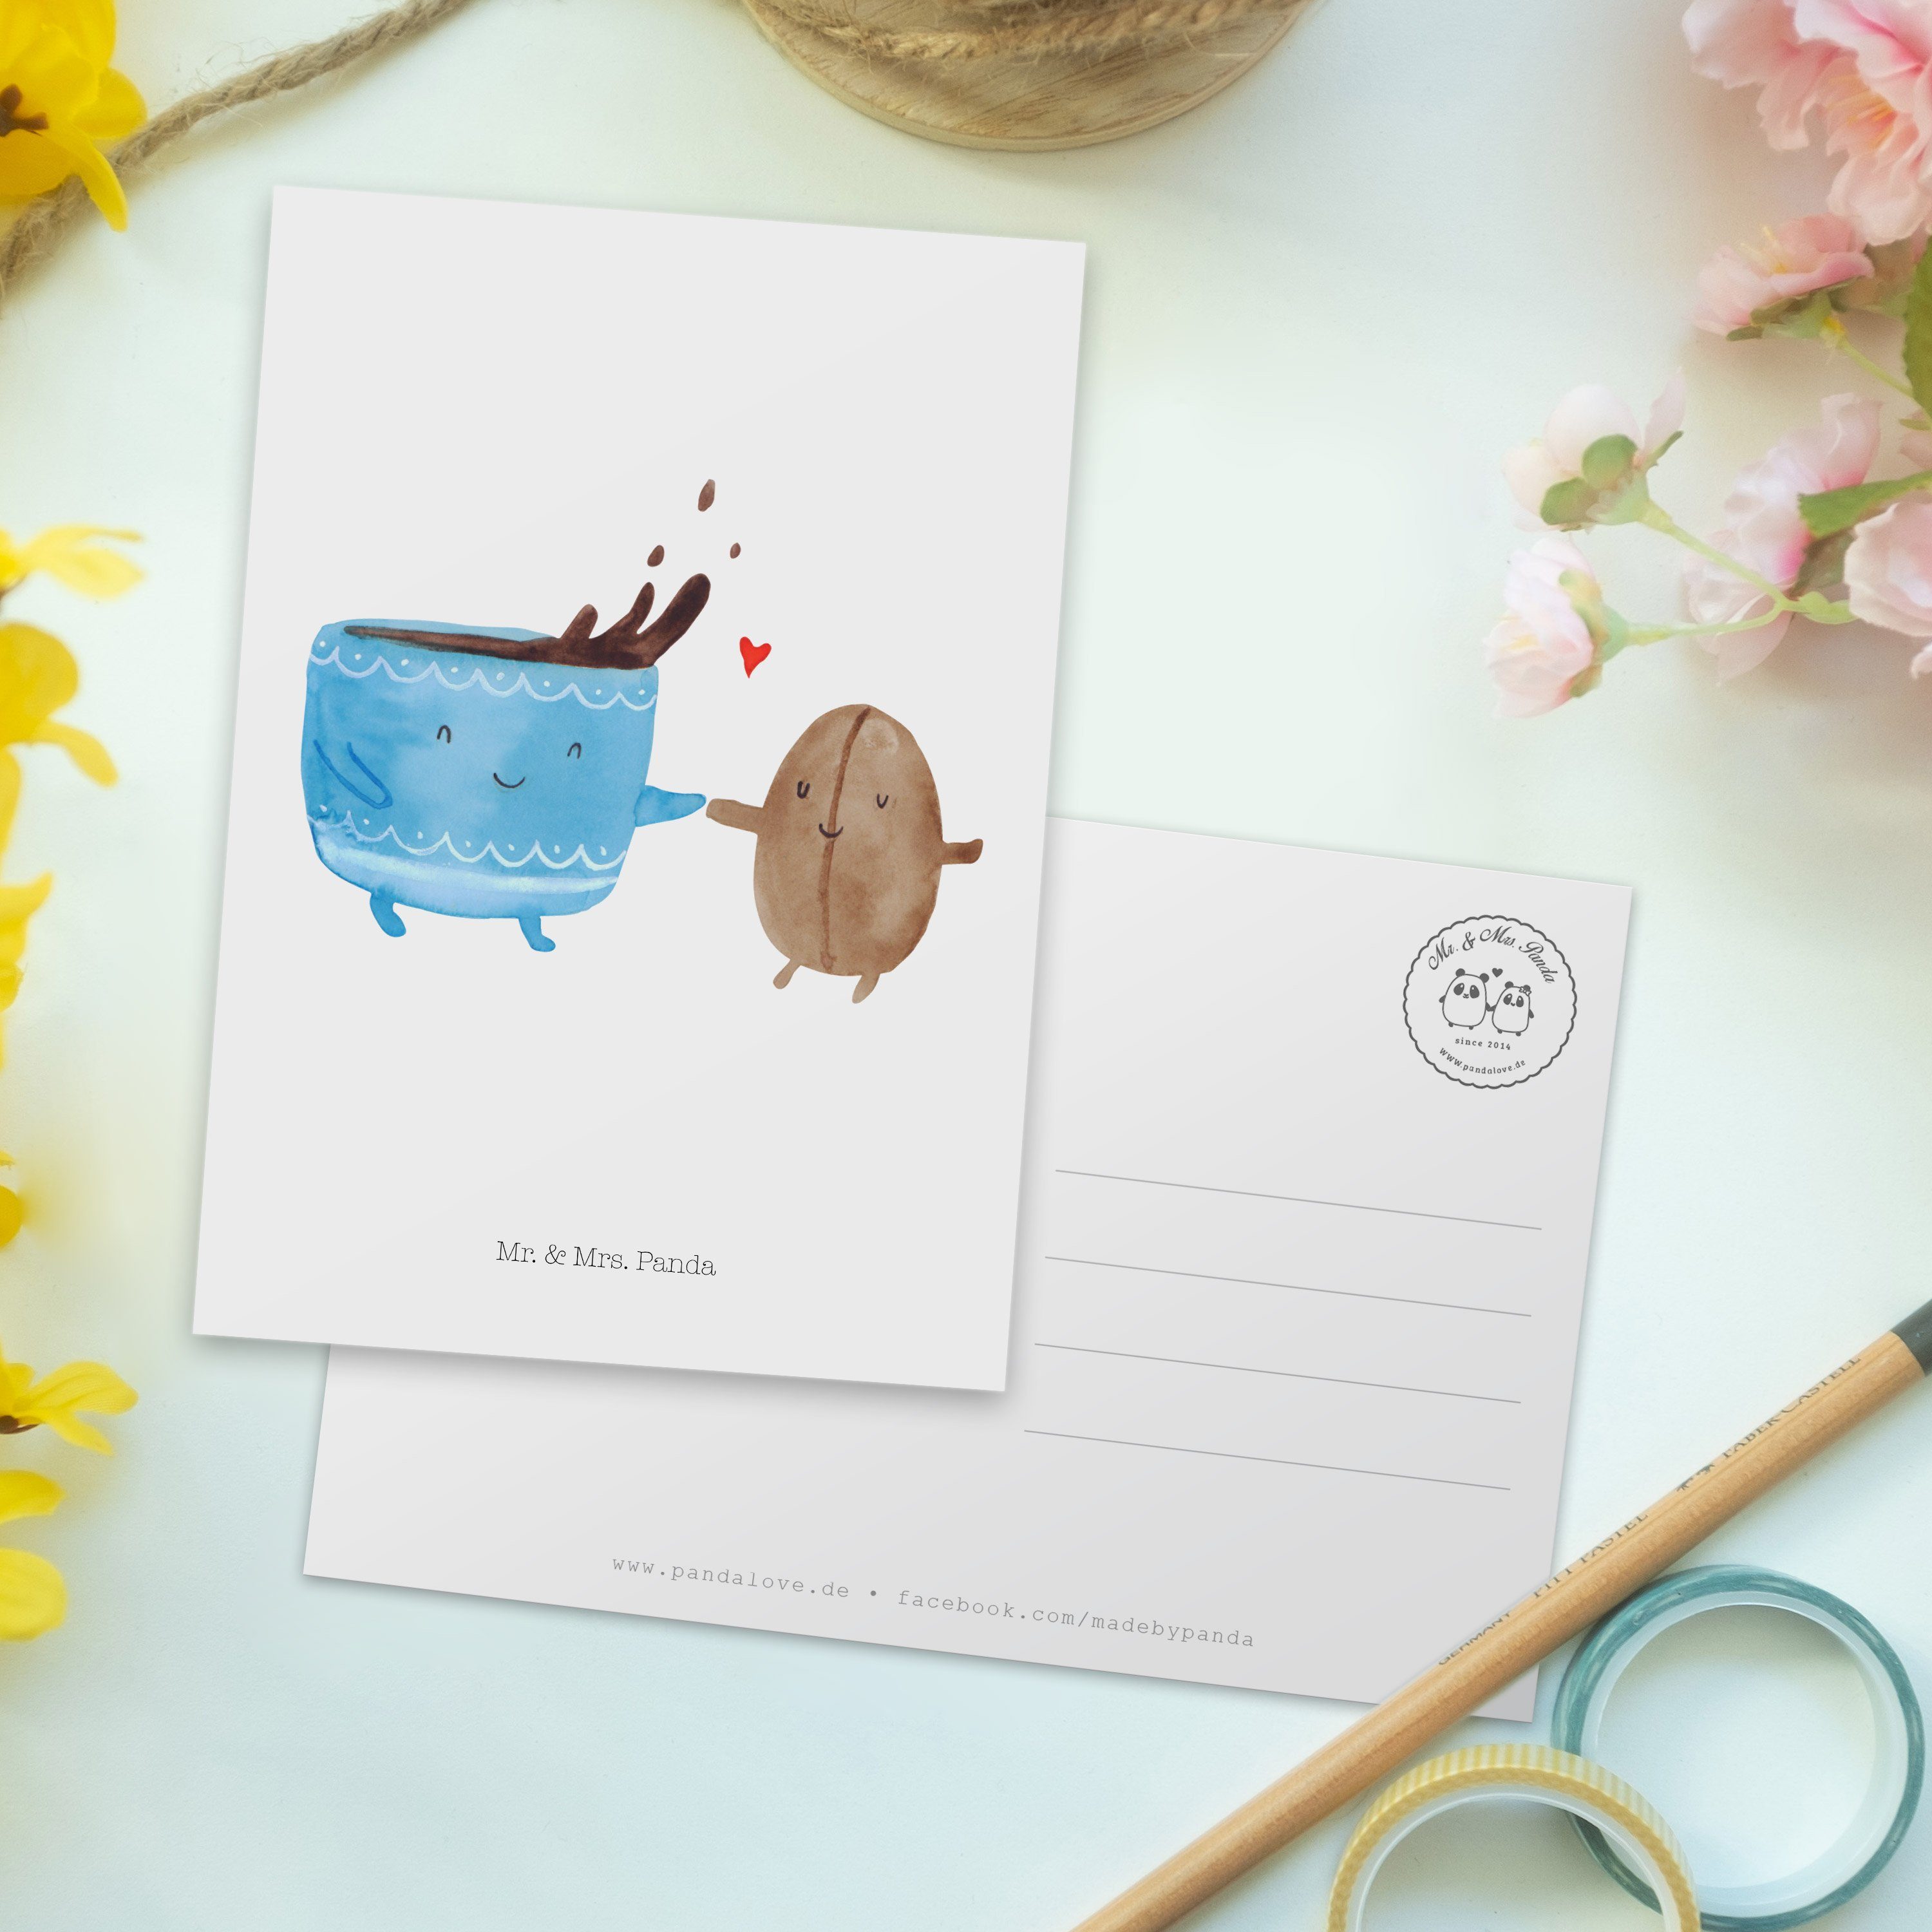 Mr. & Mrs. Panda Postkarte - Einladung, Grußkarte, Tiermoti Karte, Weiß Kaffee Bohne - Geschenk